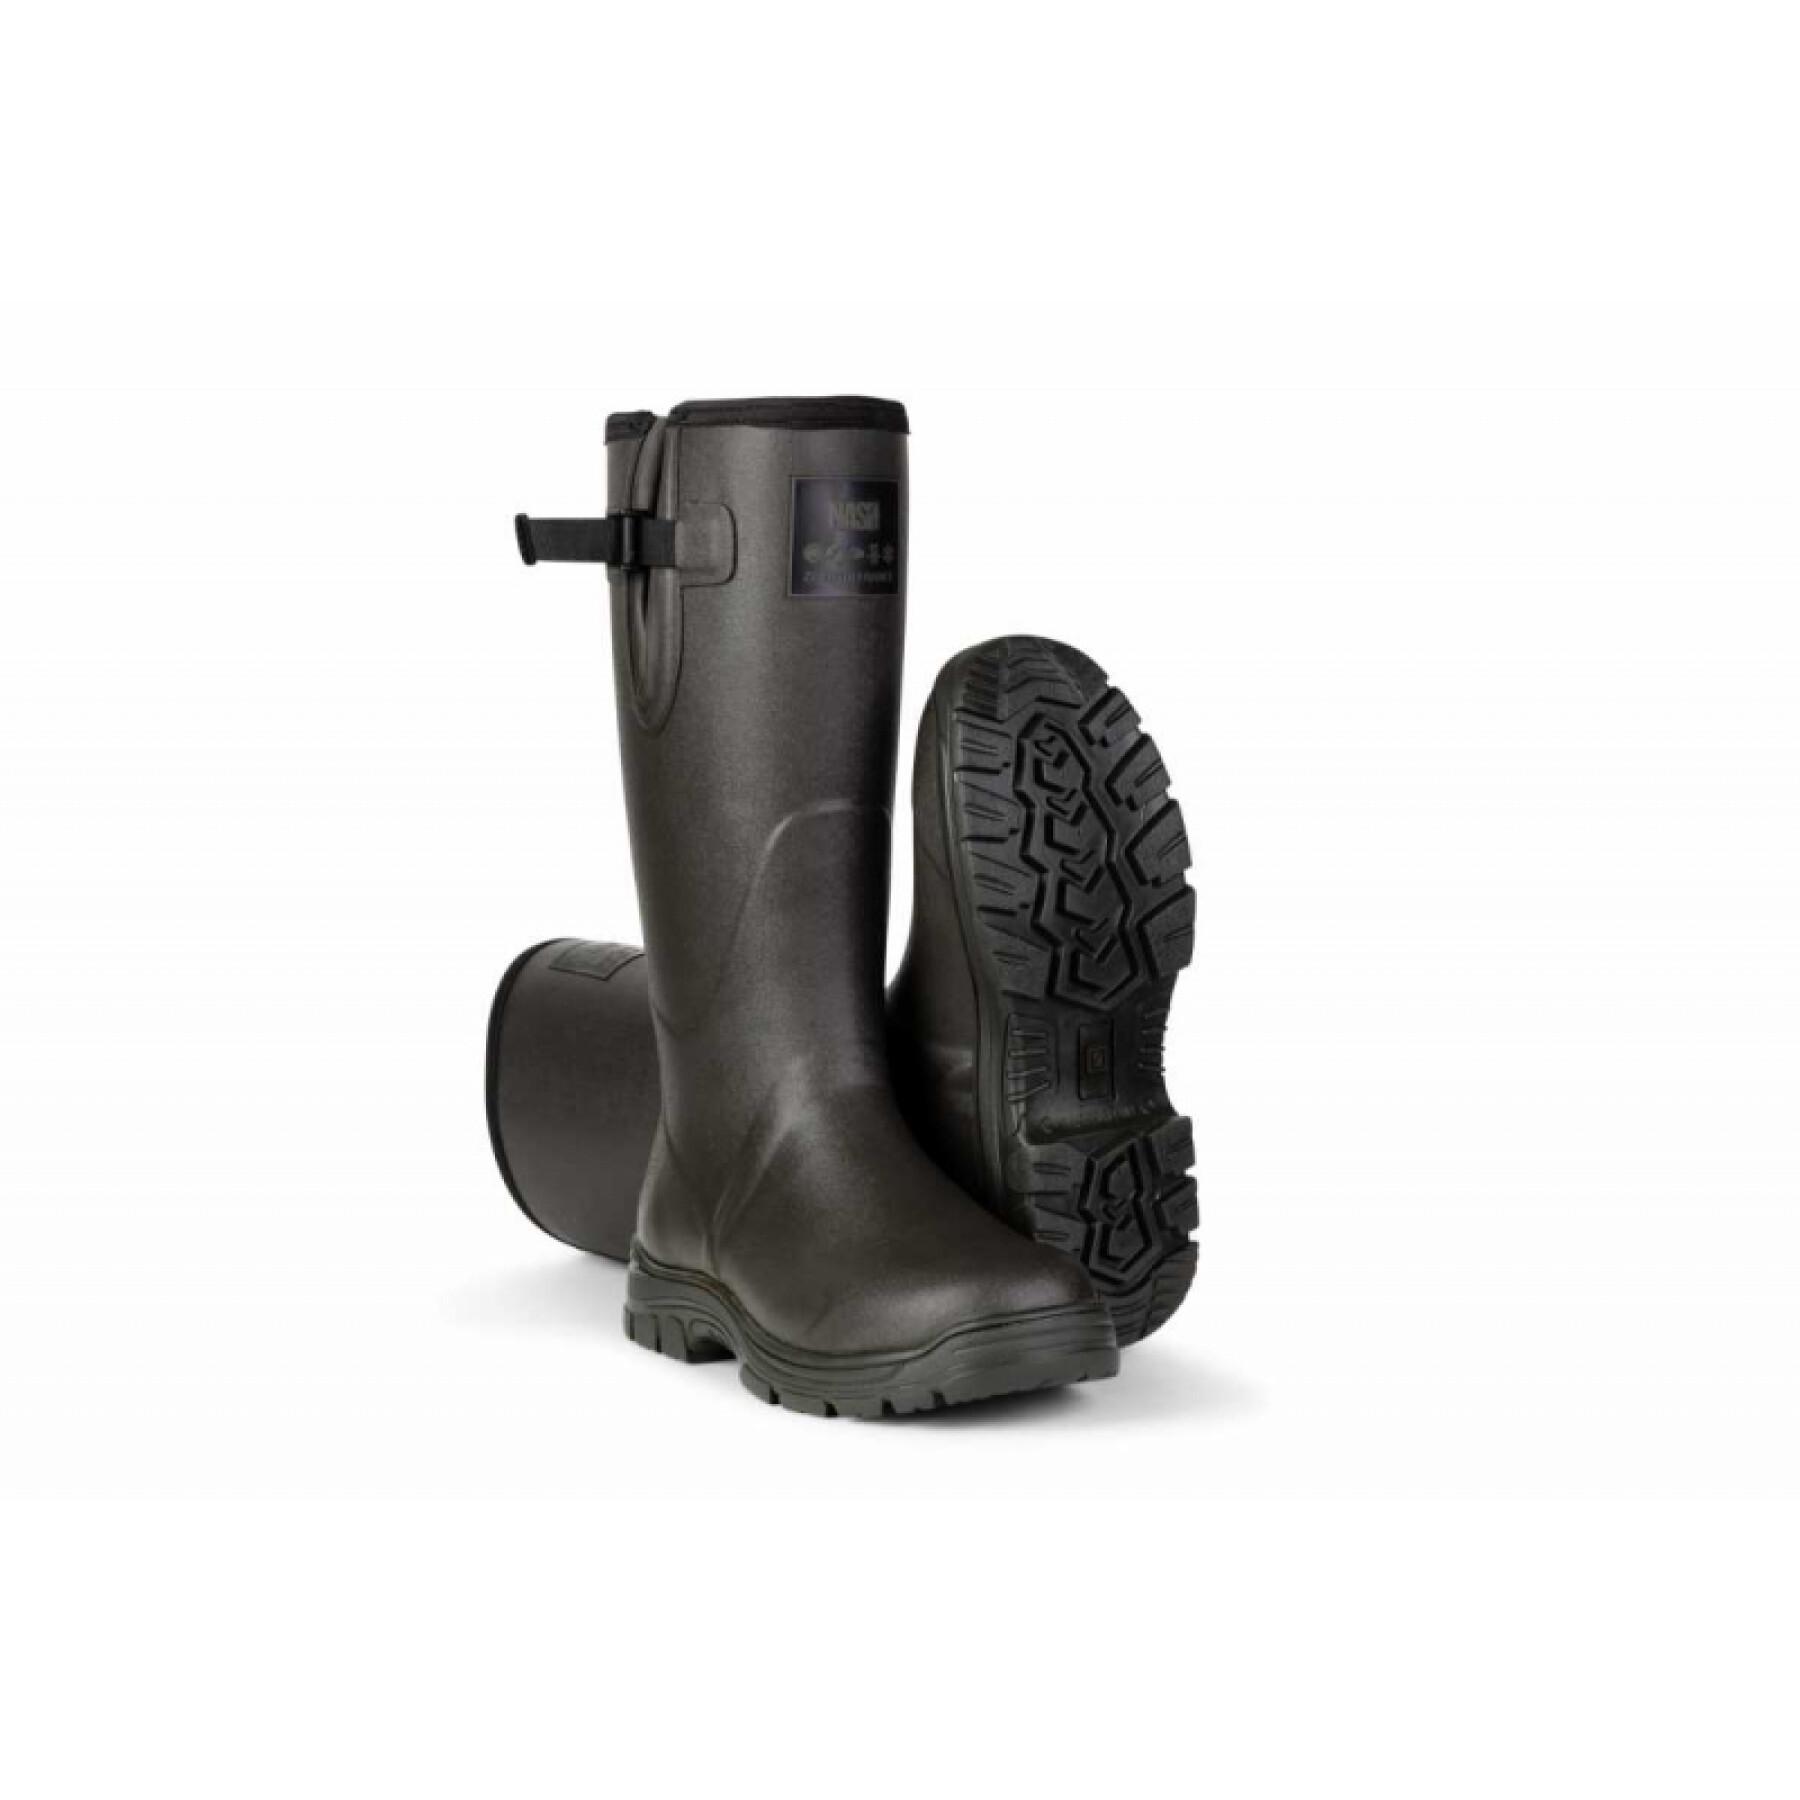 All-terrain rubber boots ZT